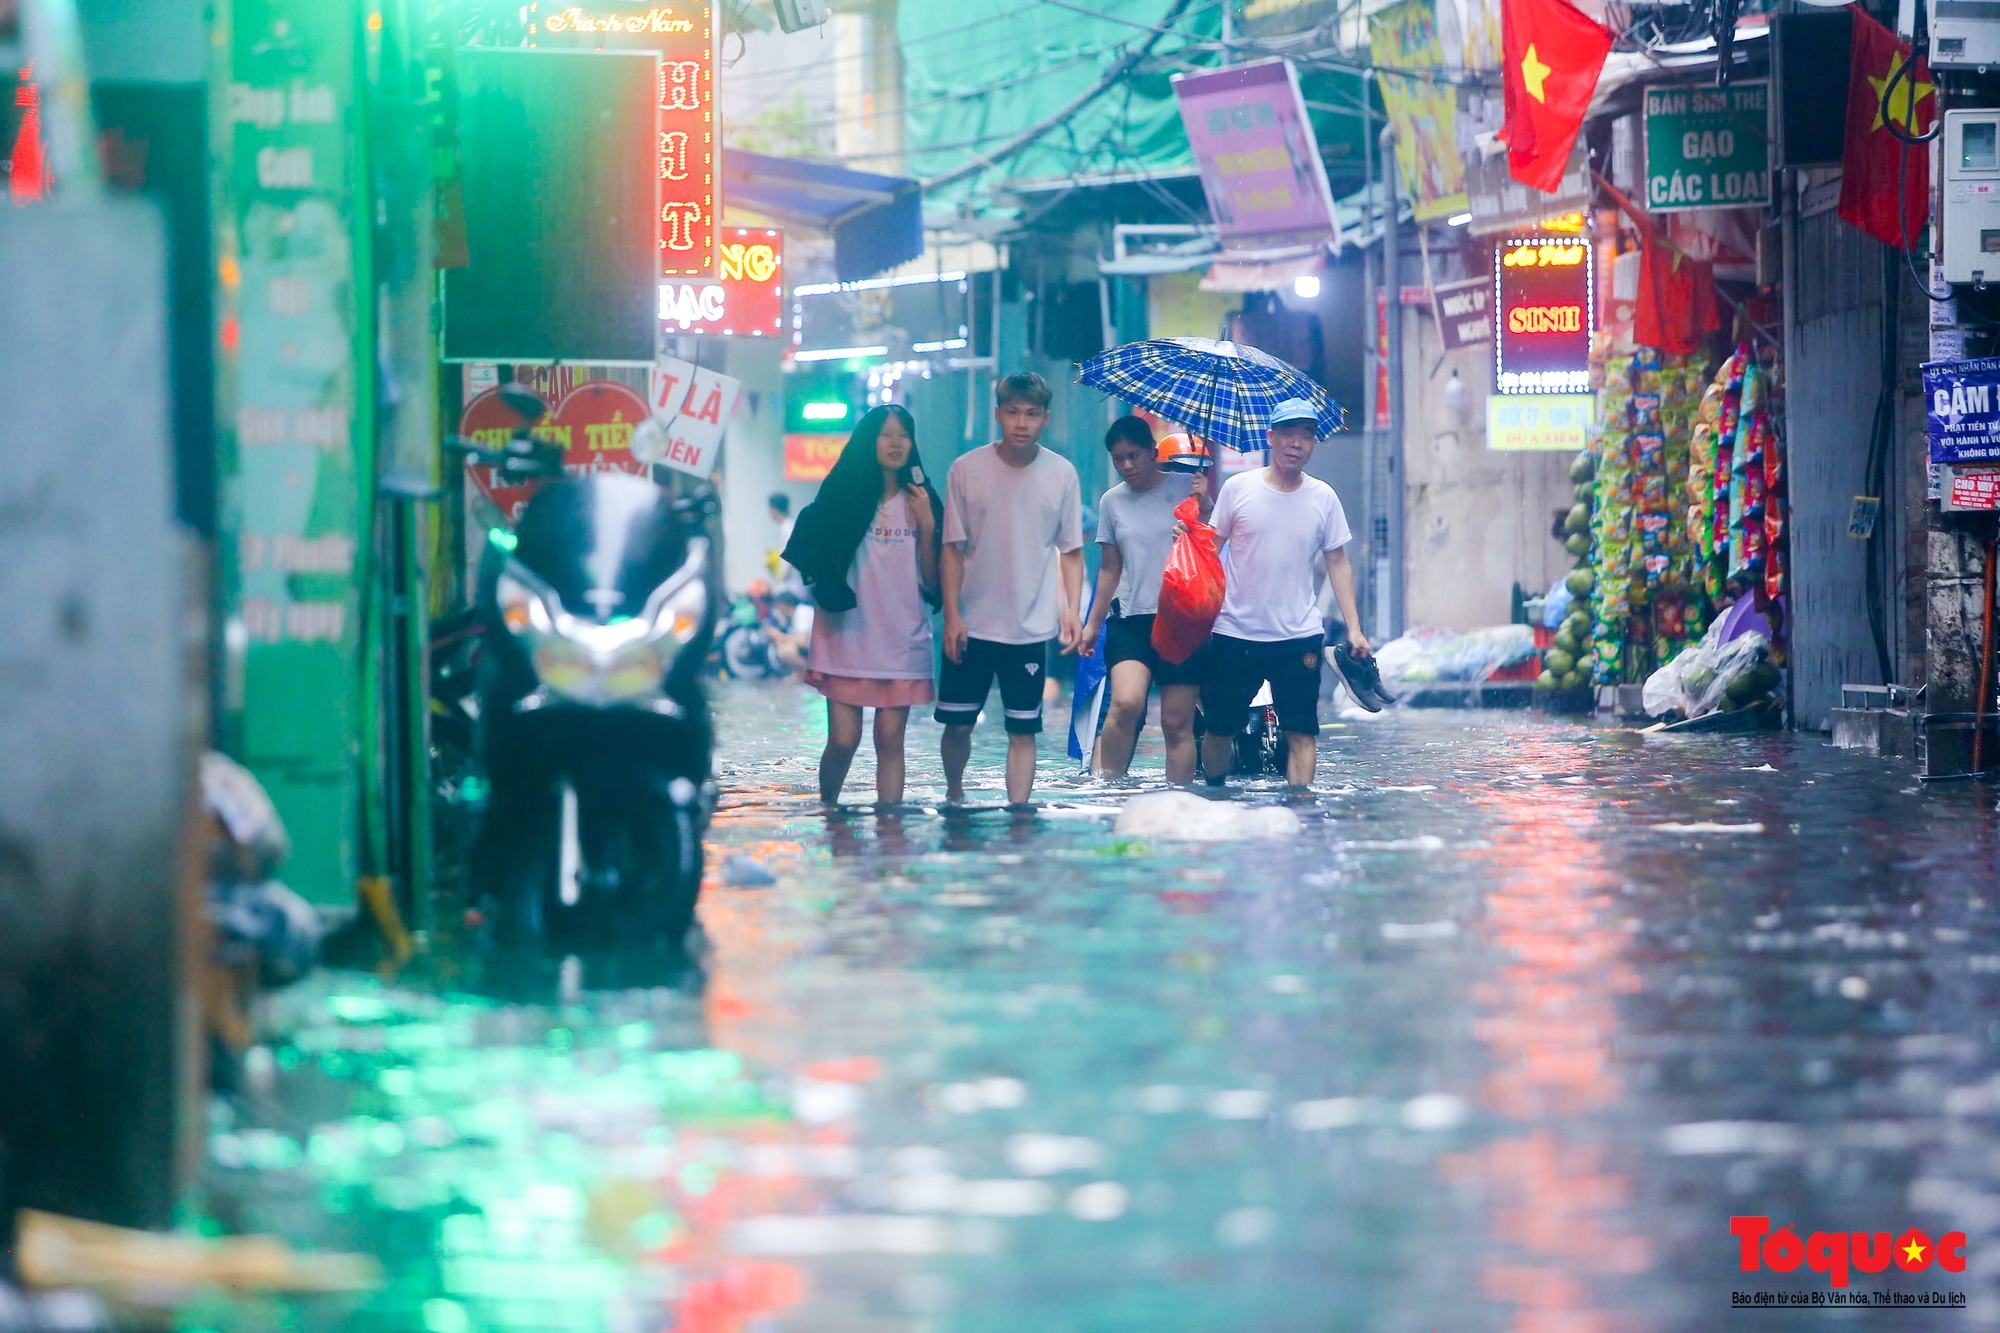 Sau cơn &quot;mưa vàng&quot; giải nhiệt, nhiều đường thủ đô ngập sâu trong nước - Ảnh 7.